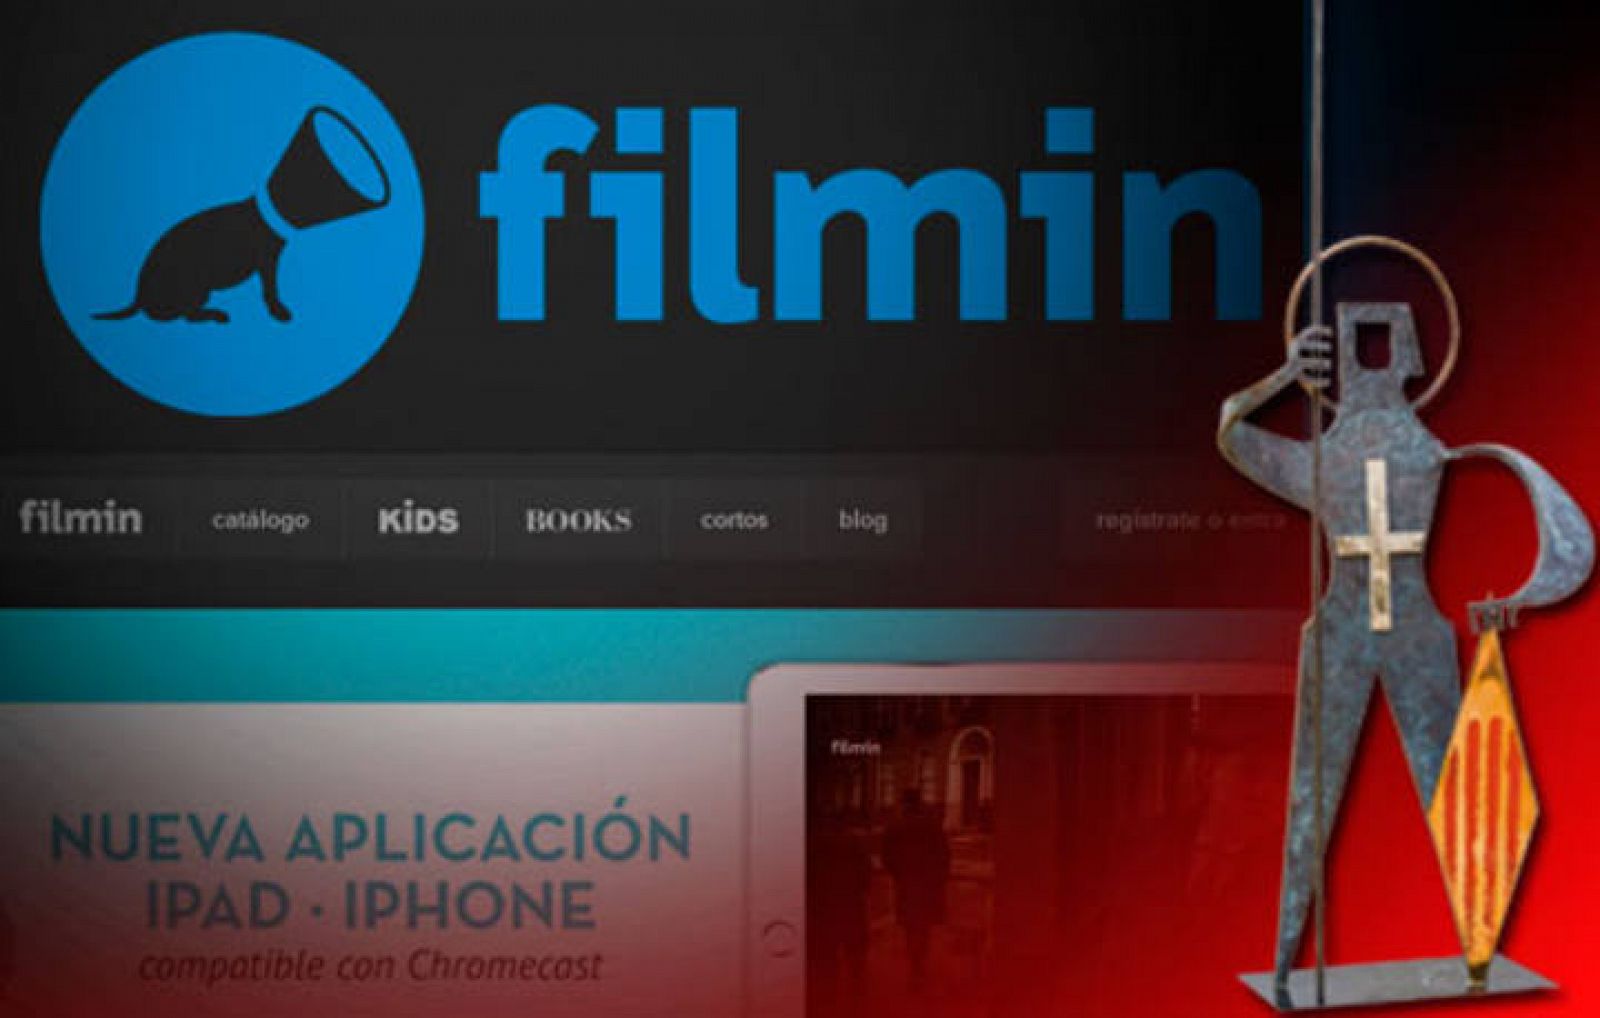 Filmin és el portal de referència de visionat de pel·lícules 'on line' a Espanya